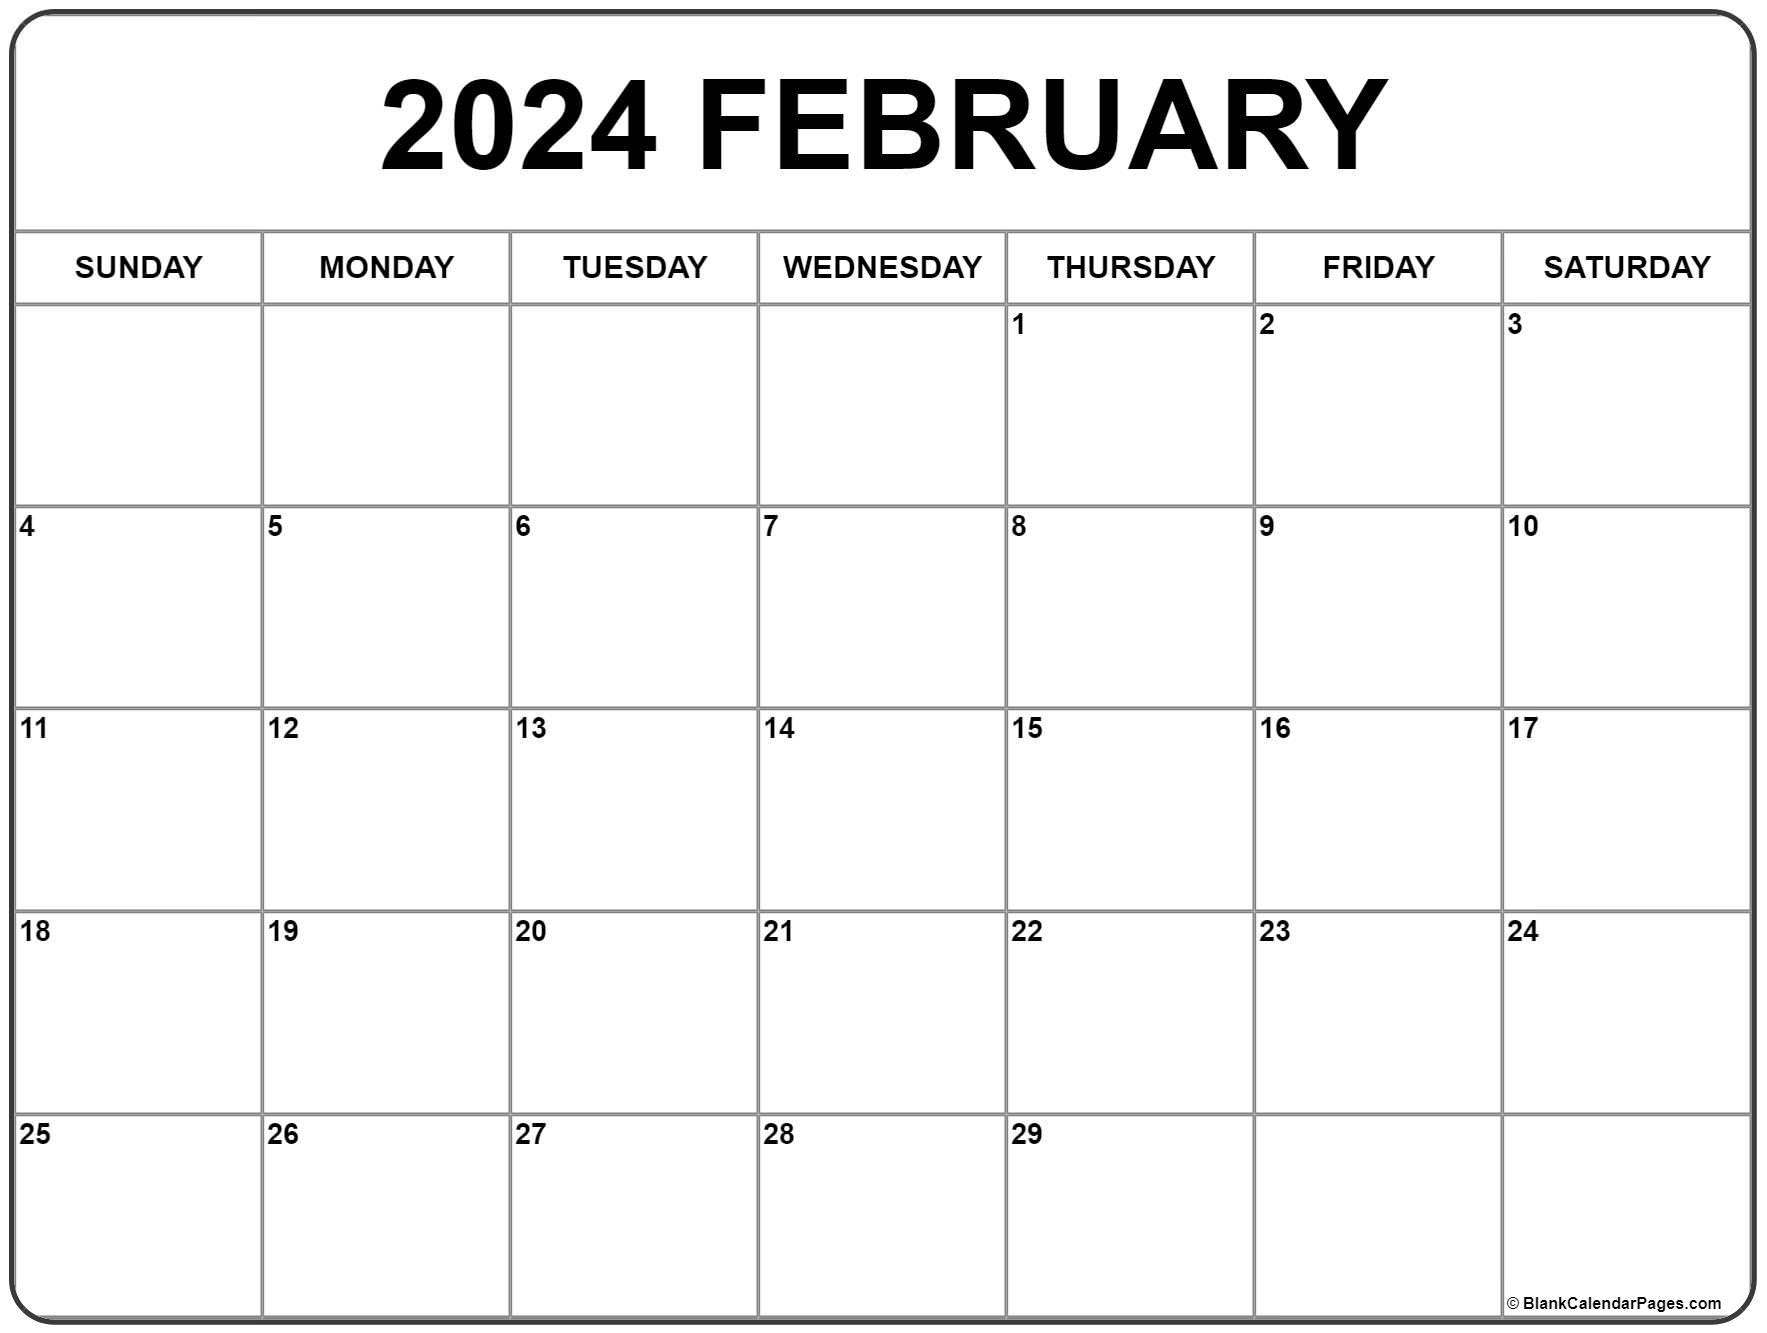 February 2021 calendar free printable calendar templates